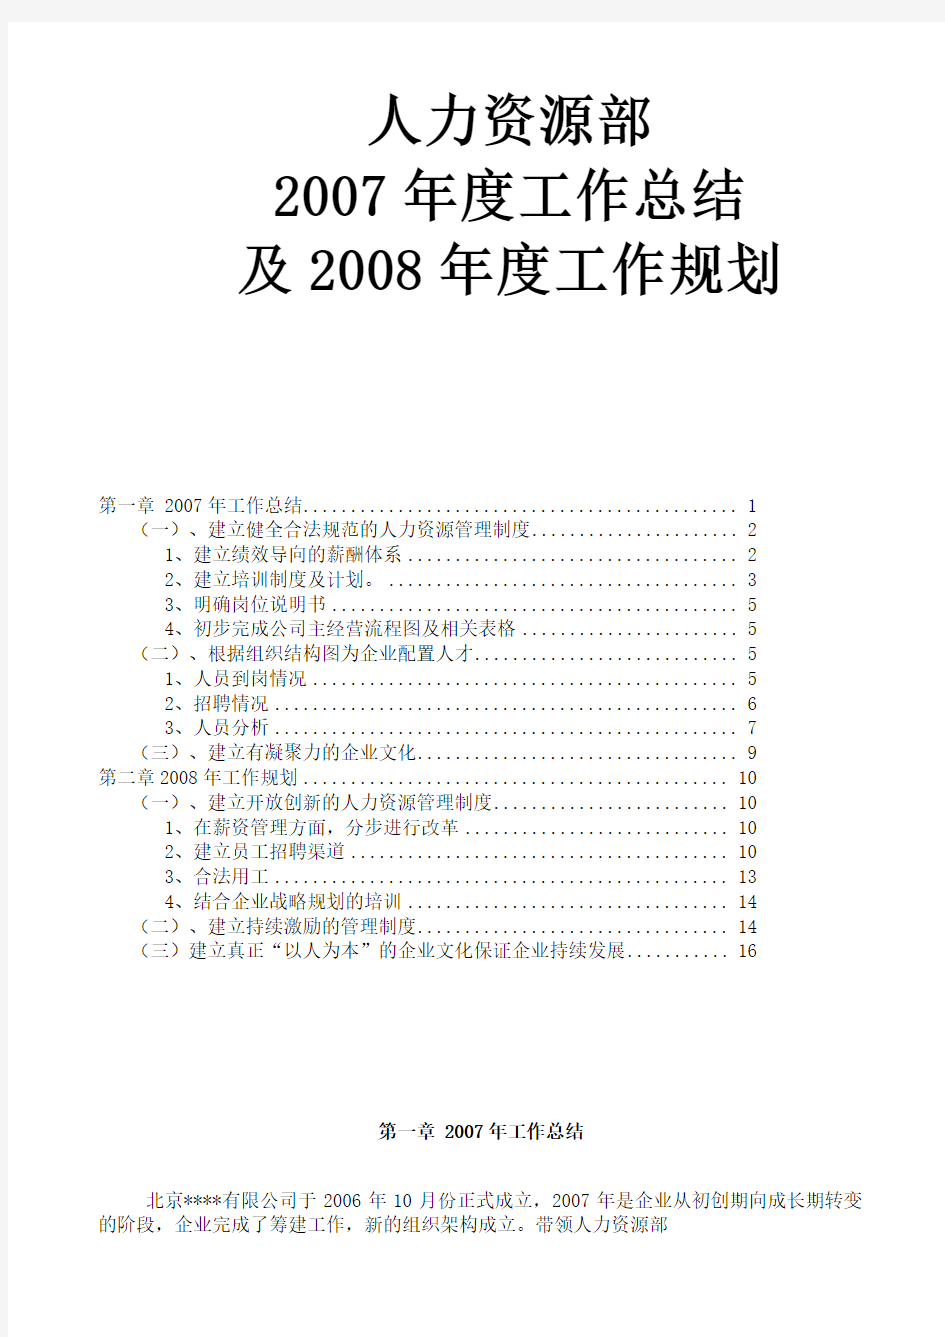 某大型上市公司人力资源2007年工作总结和2008年规划